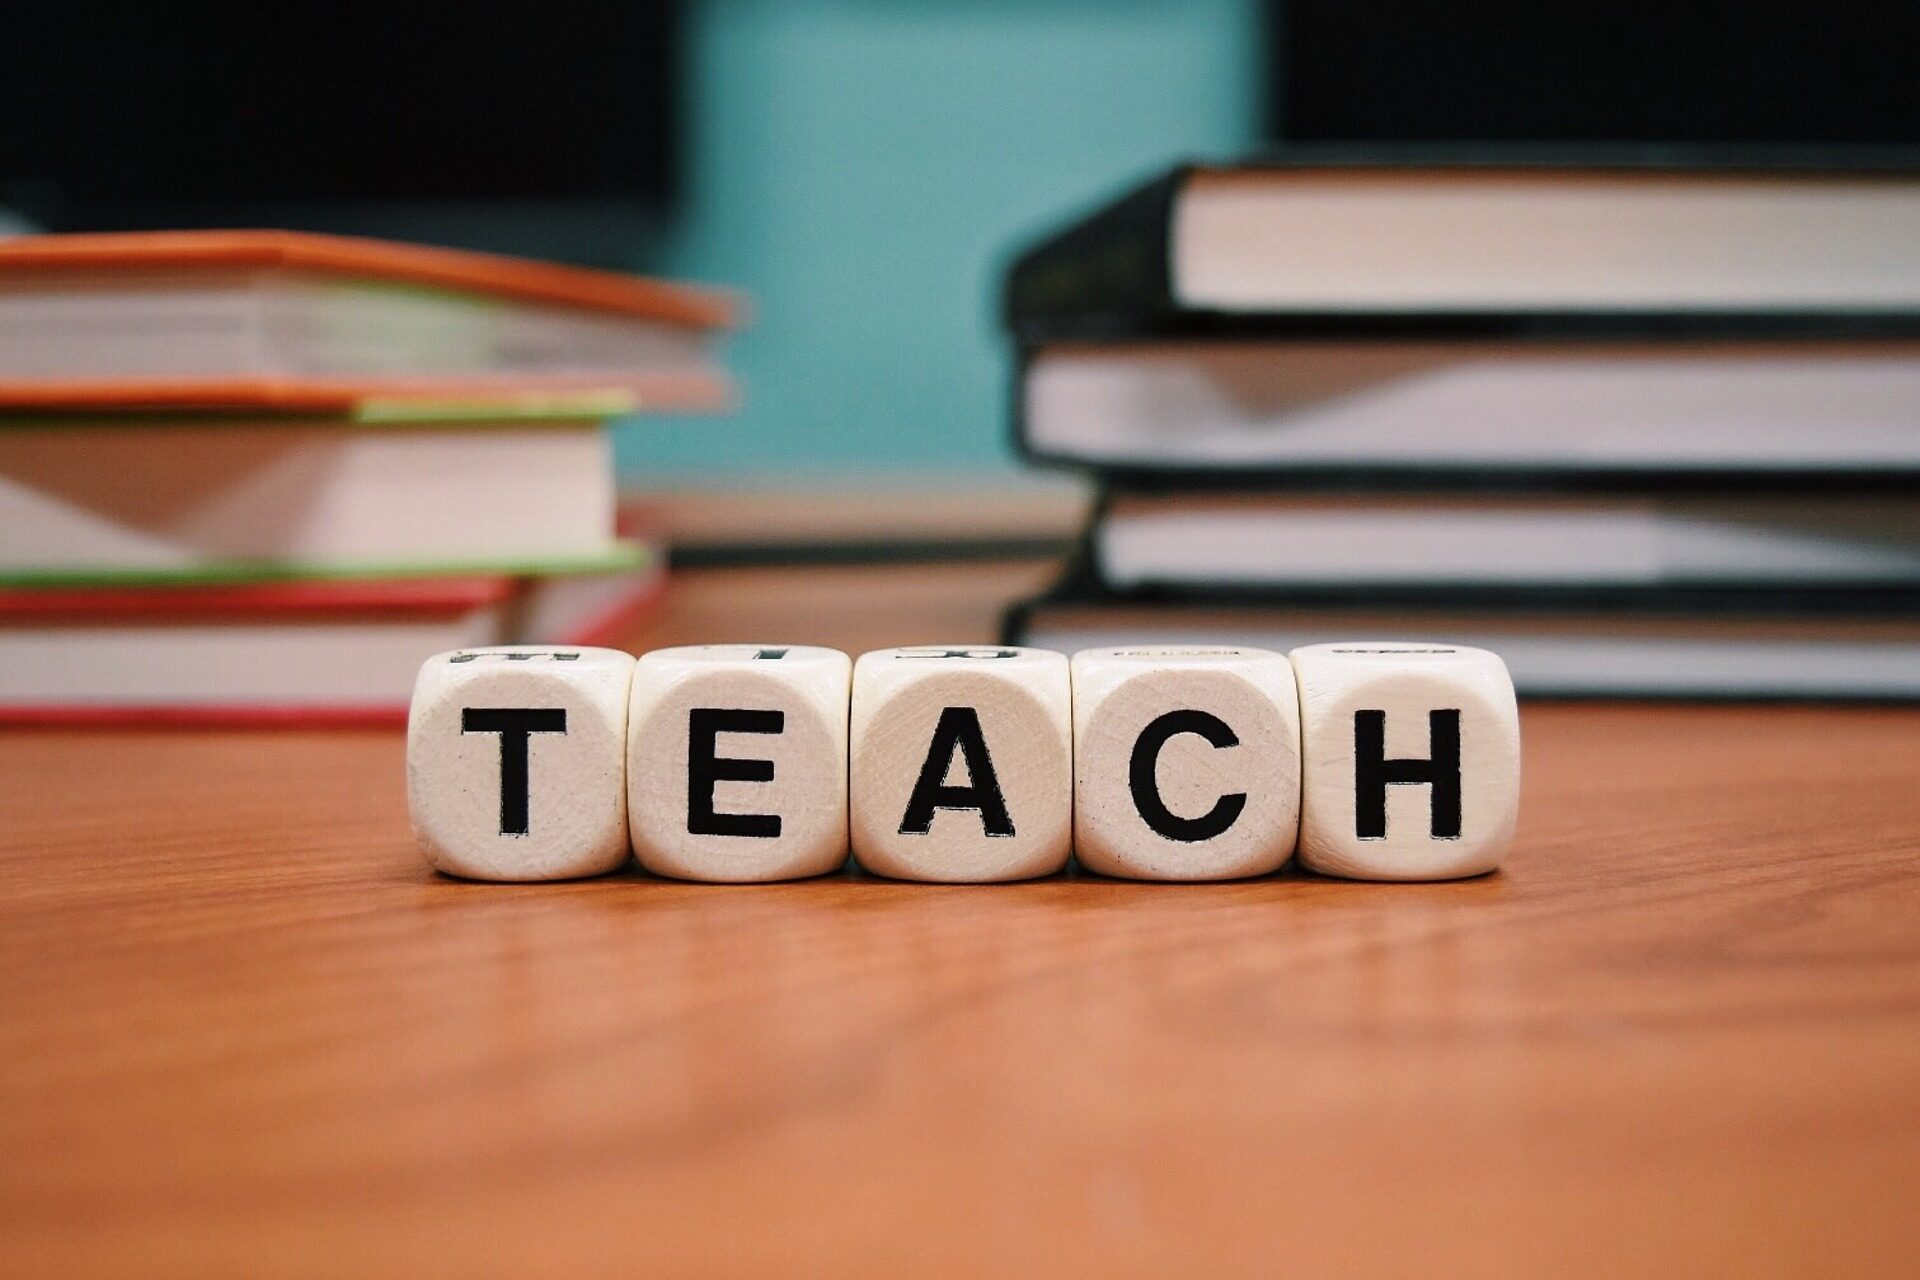 Ein Foto mit dem Wort "Teach" zur Veranschaulichung von Lehrerbildung